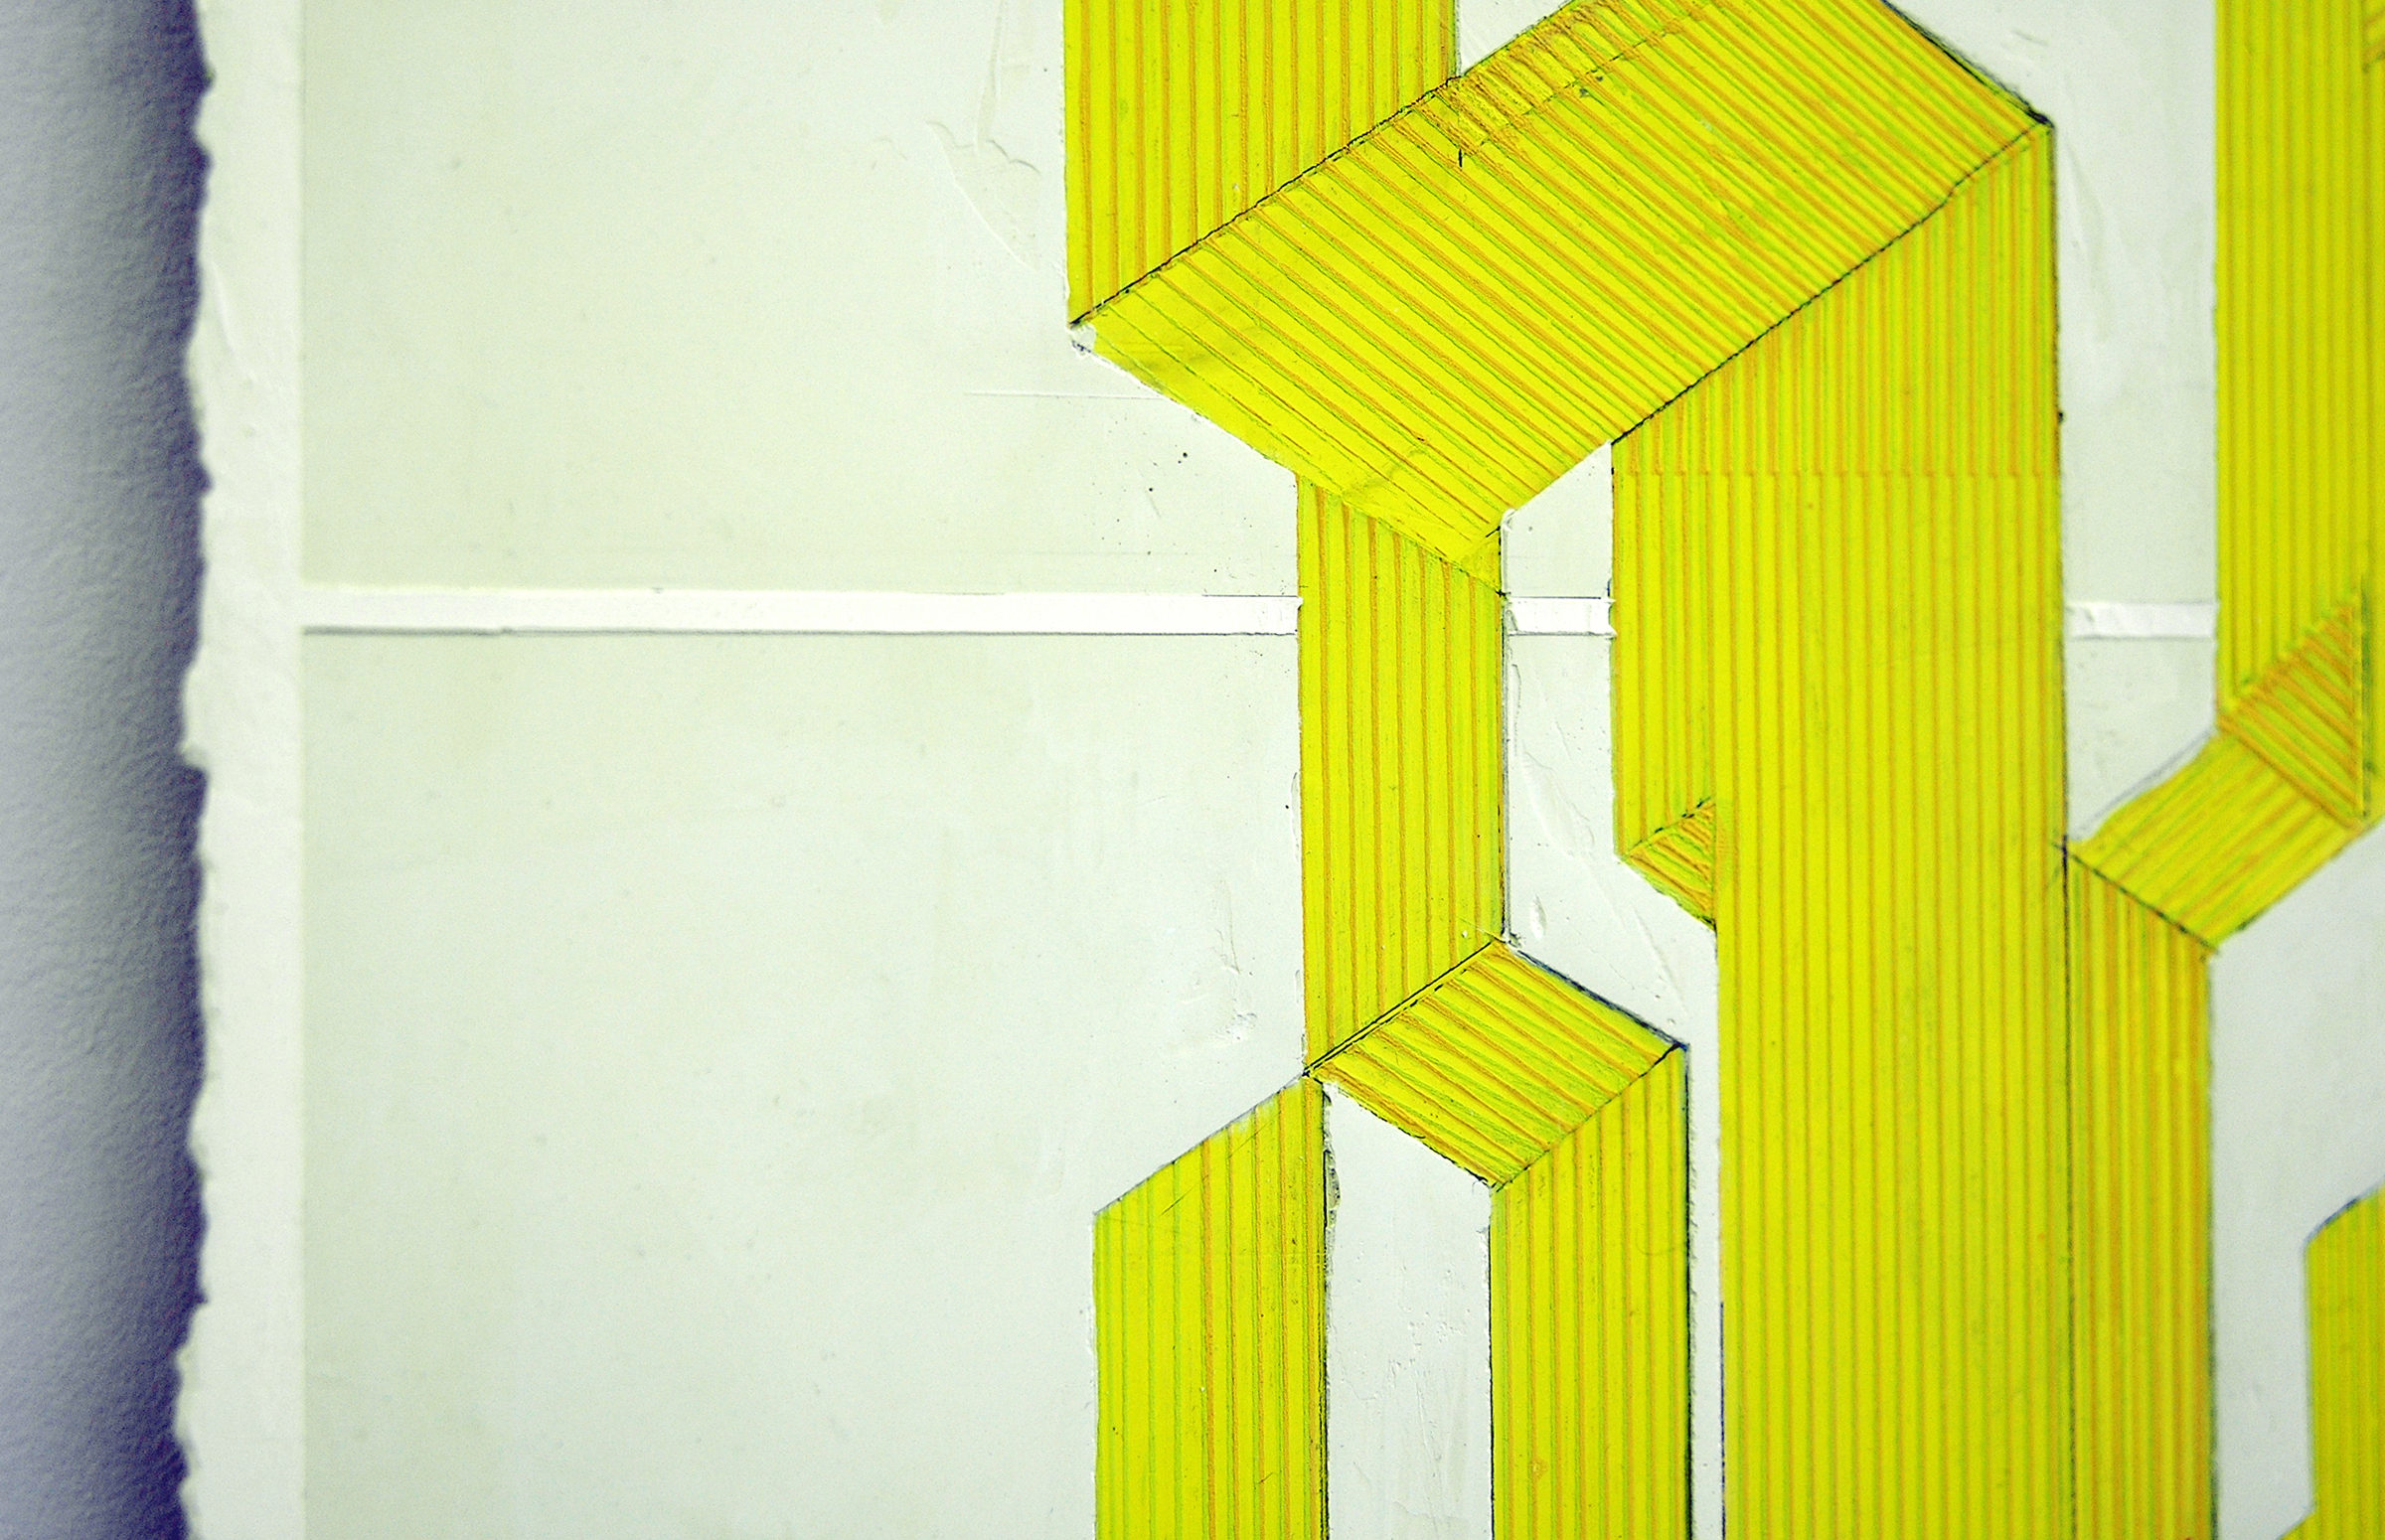   ELISE FERGUSON  (detail) &nbsp;Table , pigmented plaster on MDF panel, 36" x 24", 2014 